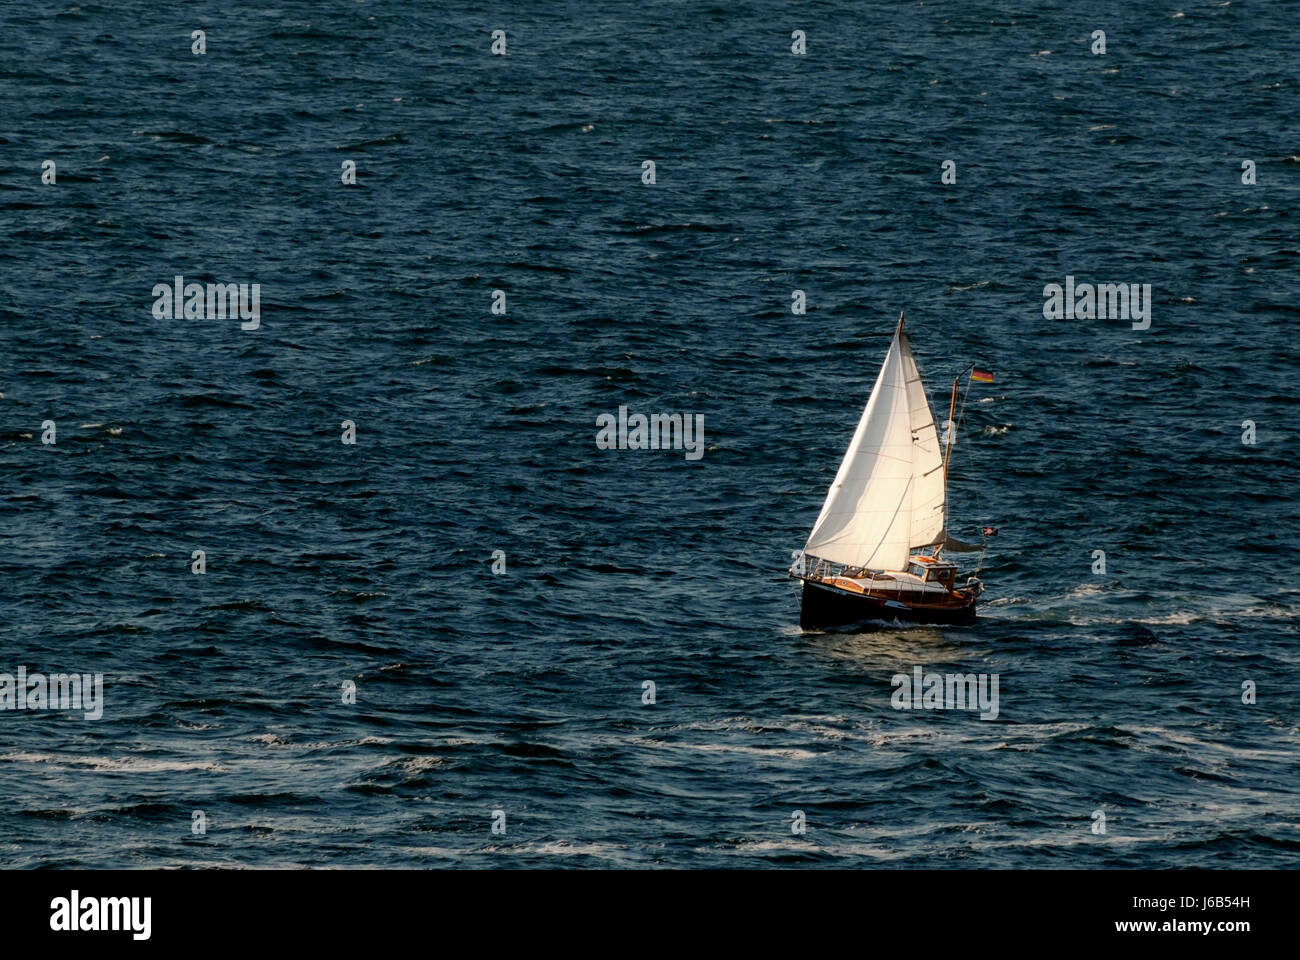 sail small tiny little short sailing ship sailing boat sailboat rowing boat Stock Photo